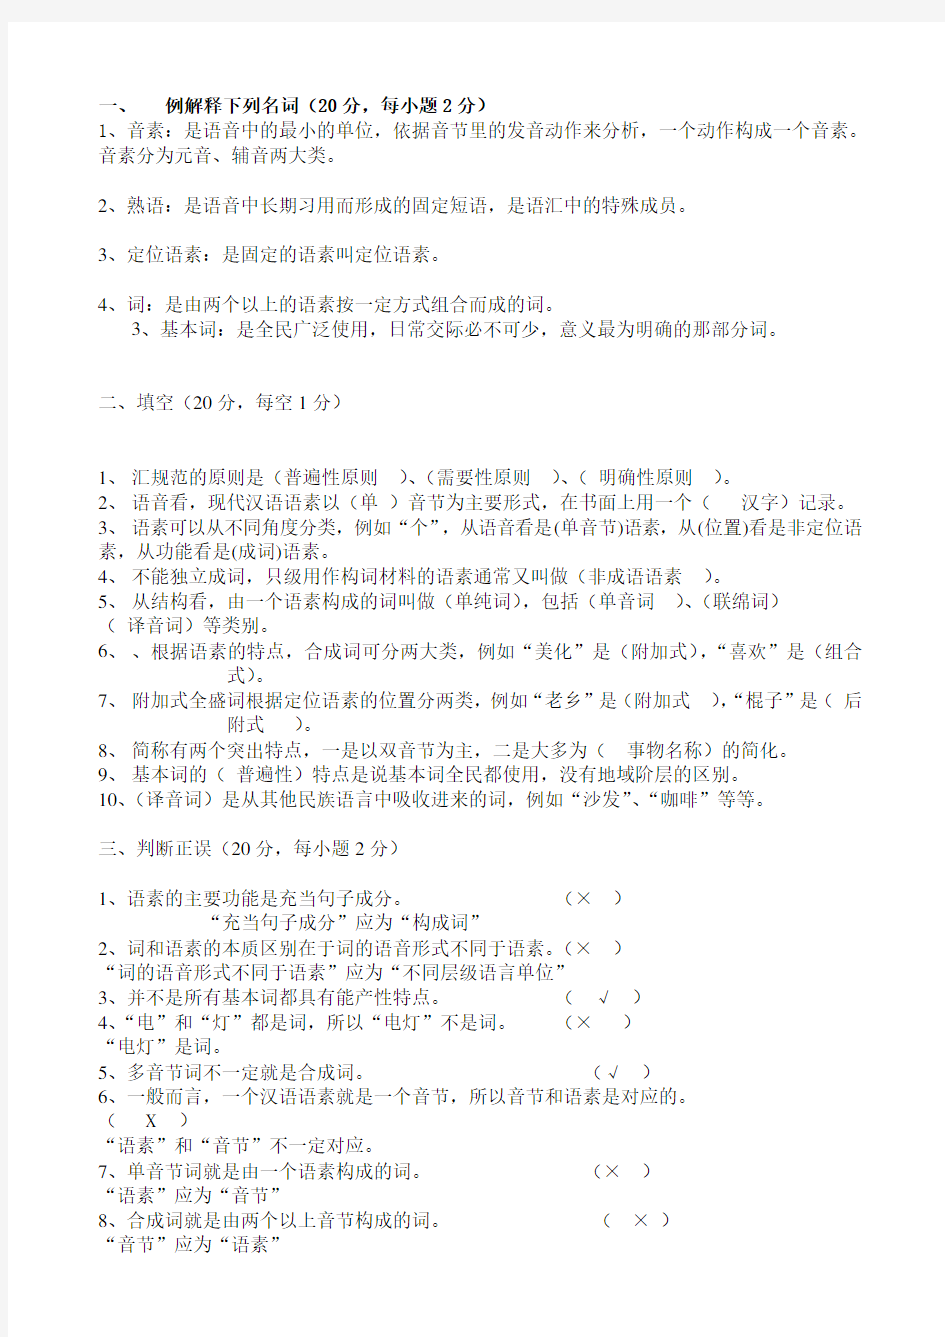 《现代汉语1》作业 (3)